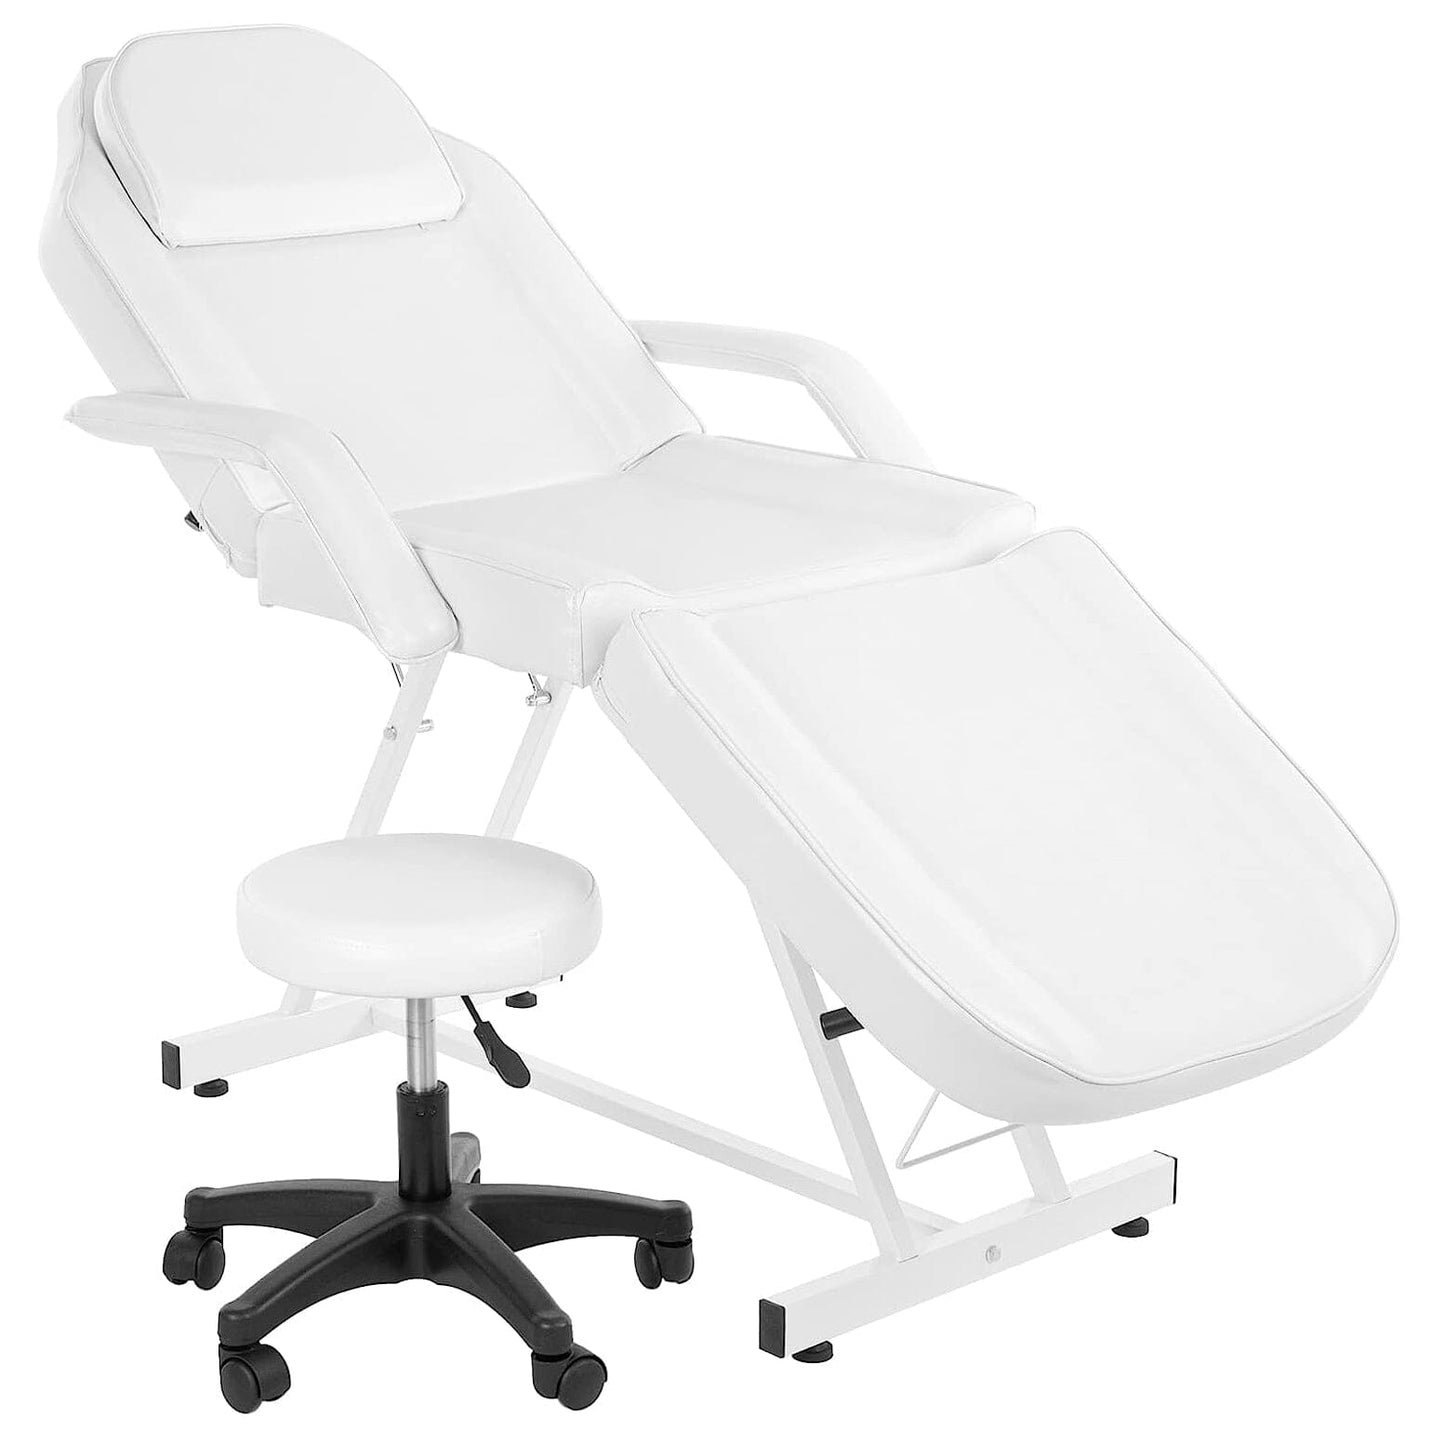 DK-58002 | Massage Bed MASSAGE BED SSW 